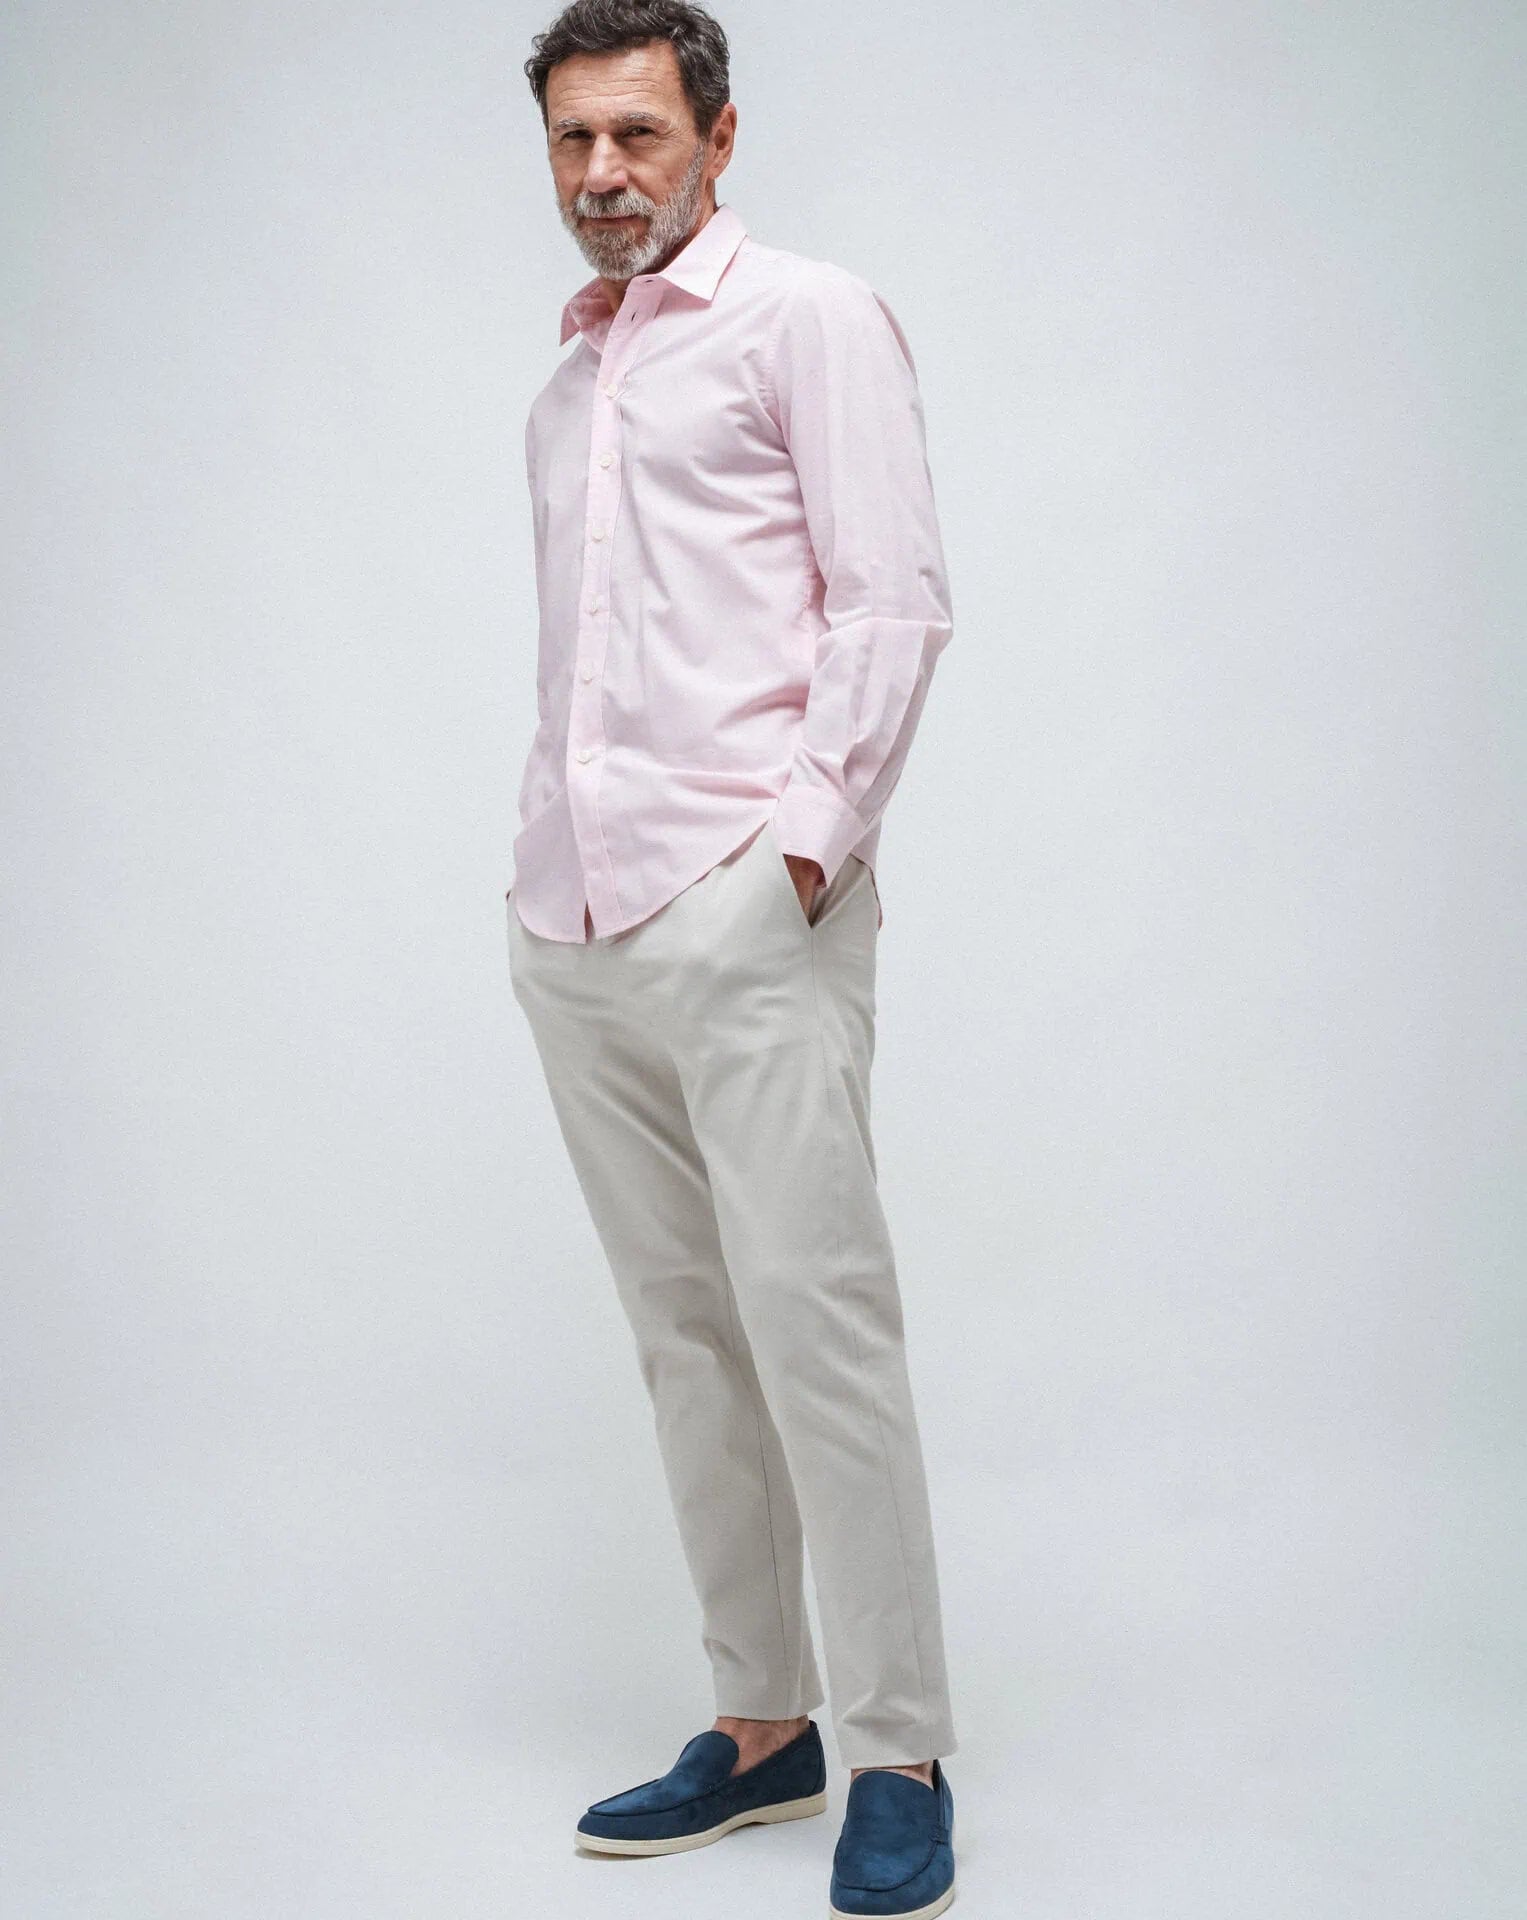 The Men's Pink shirt